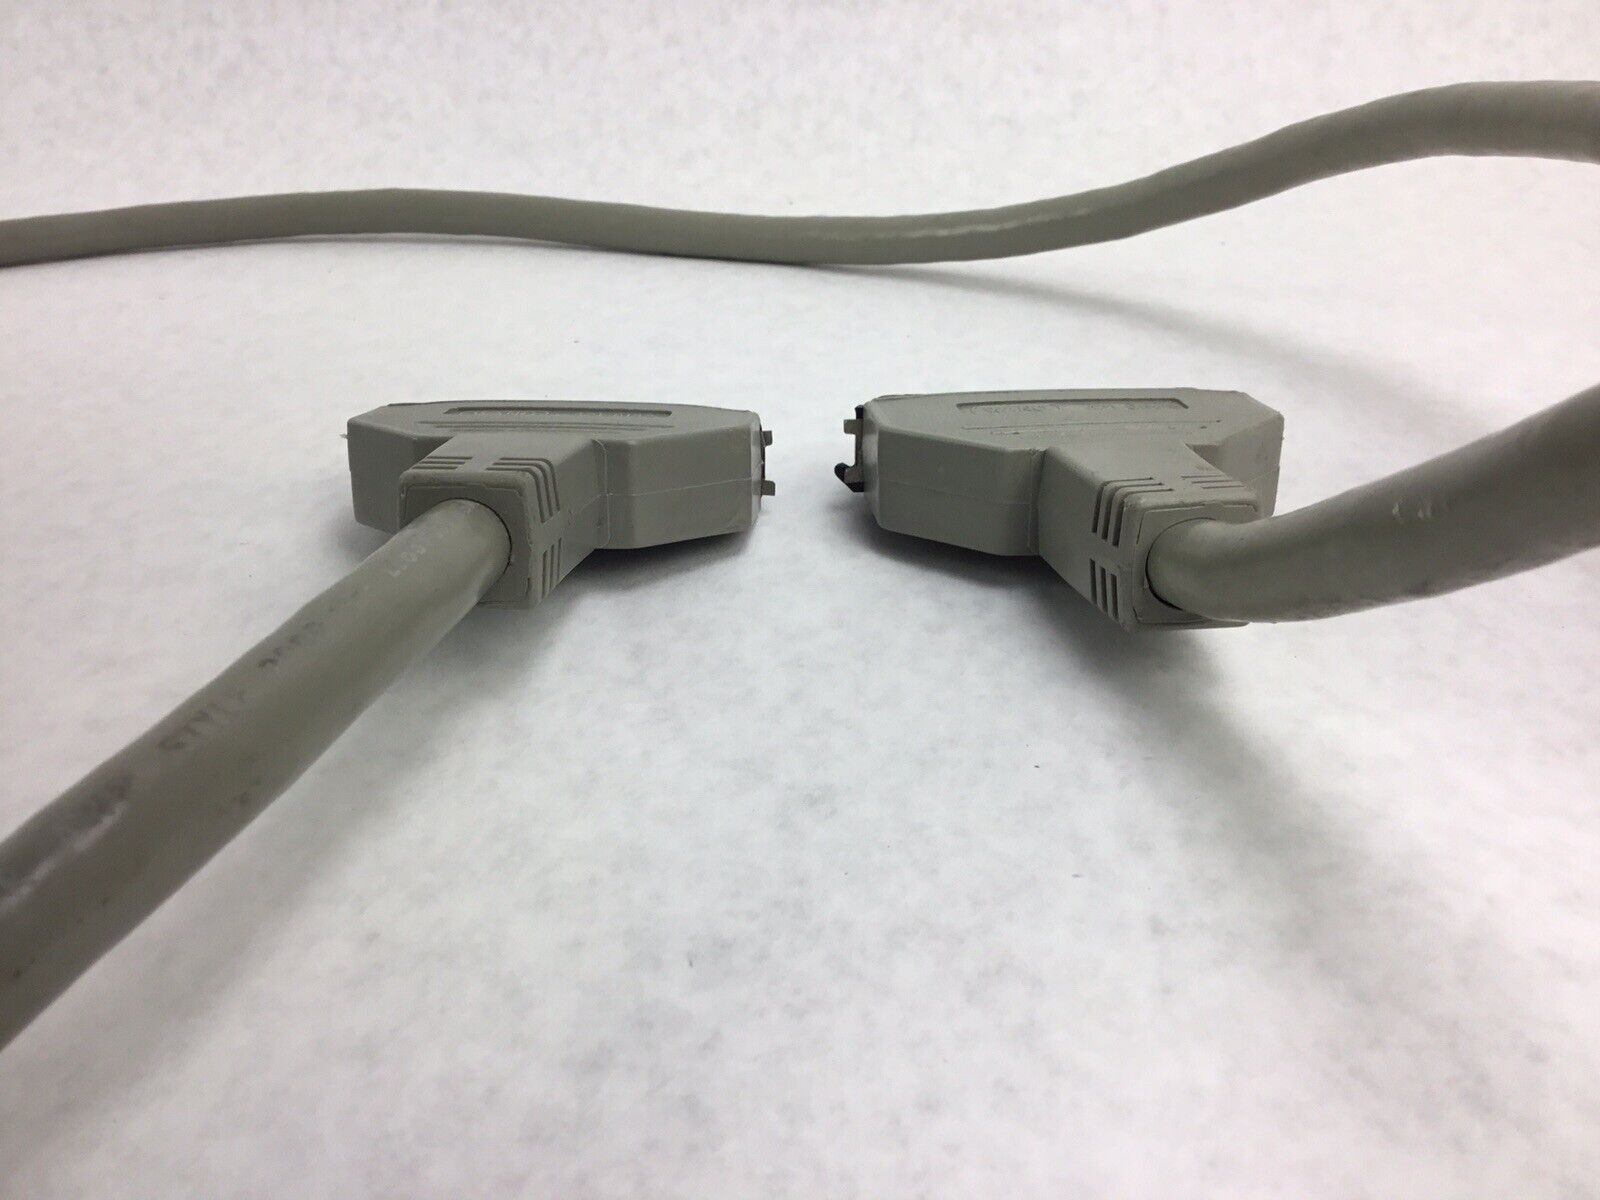 Wang Printer Interface Cable 421-0066